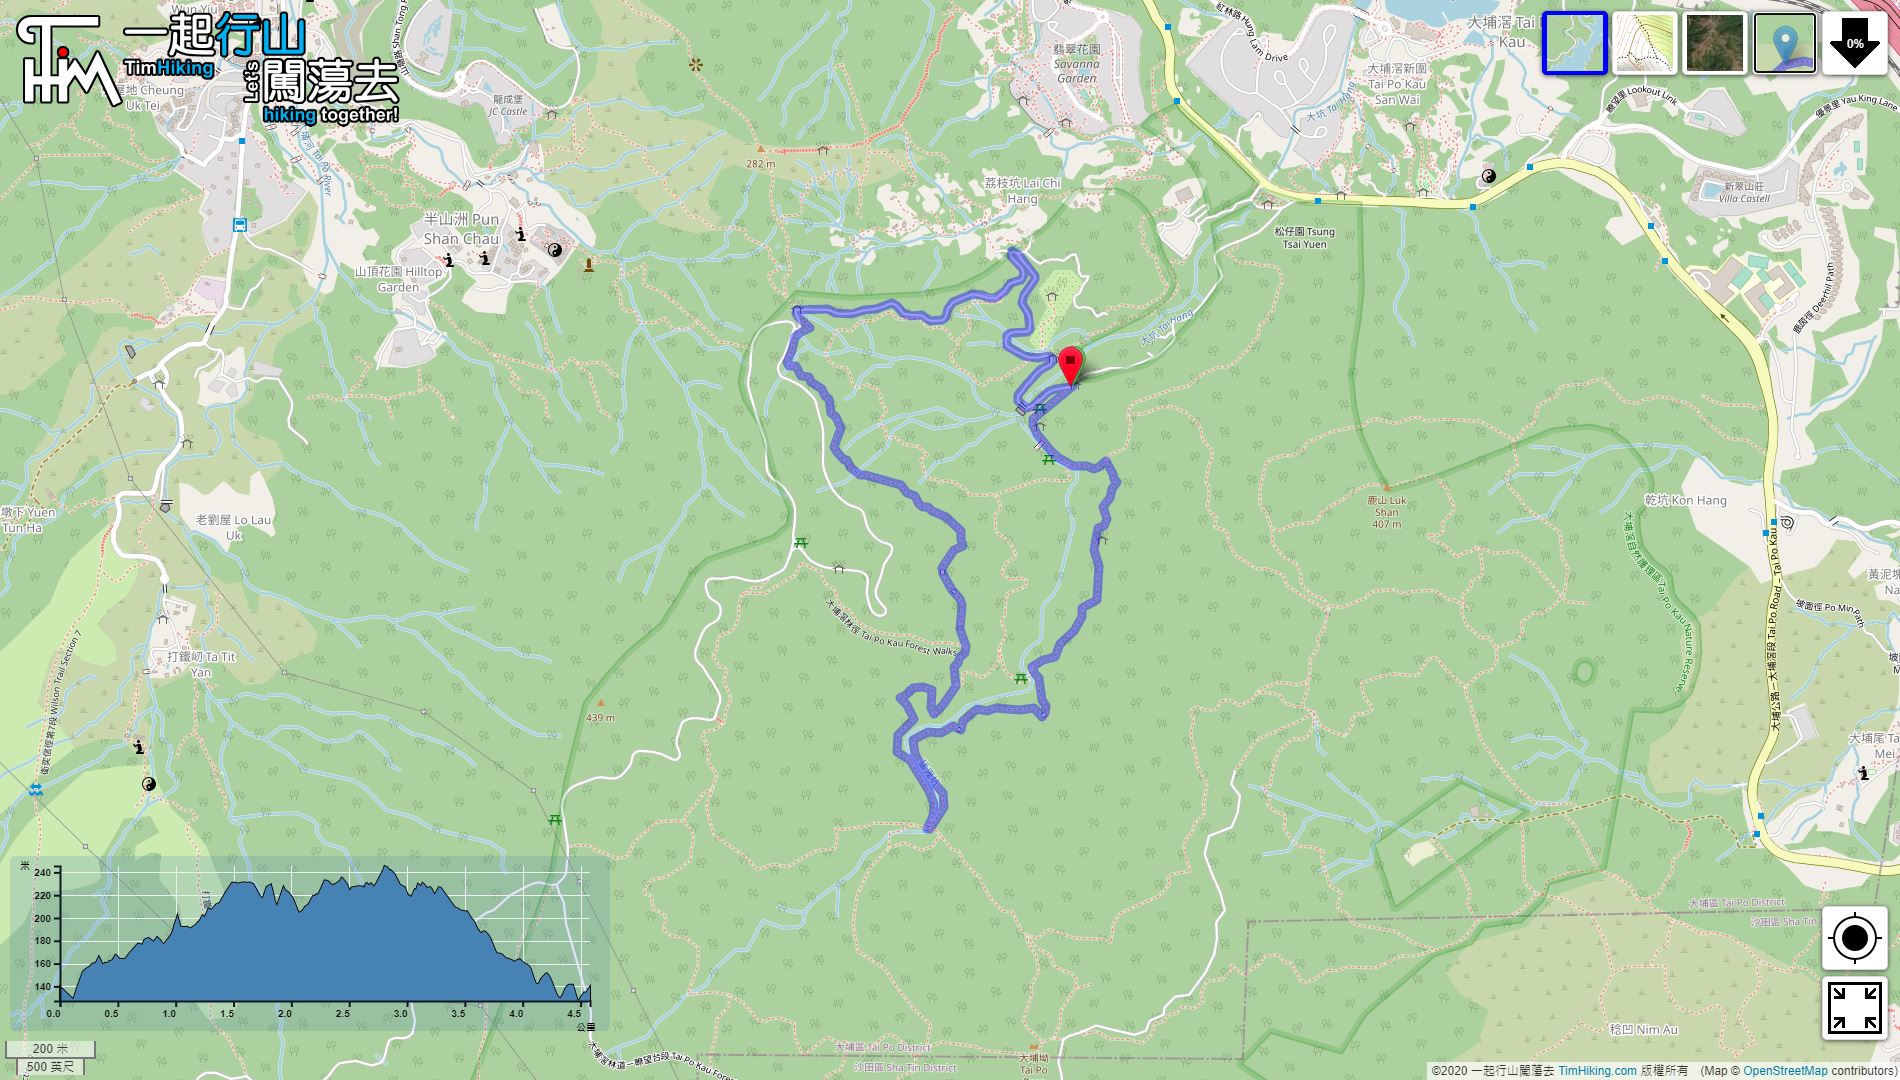 「大埔滘林徑 (藍路)」路線地圖